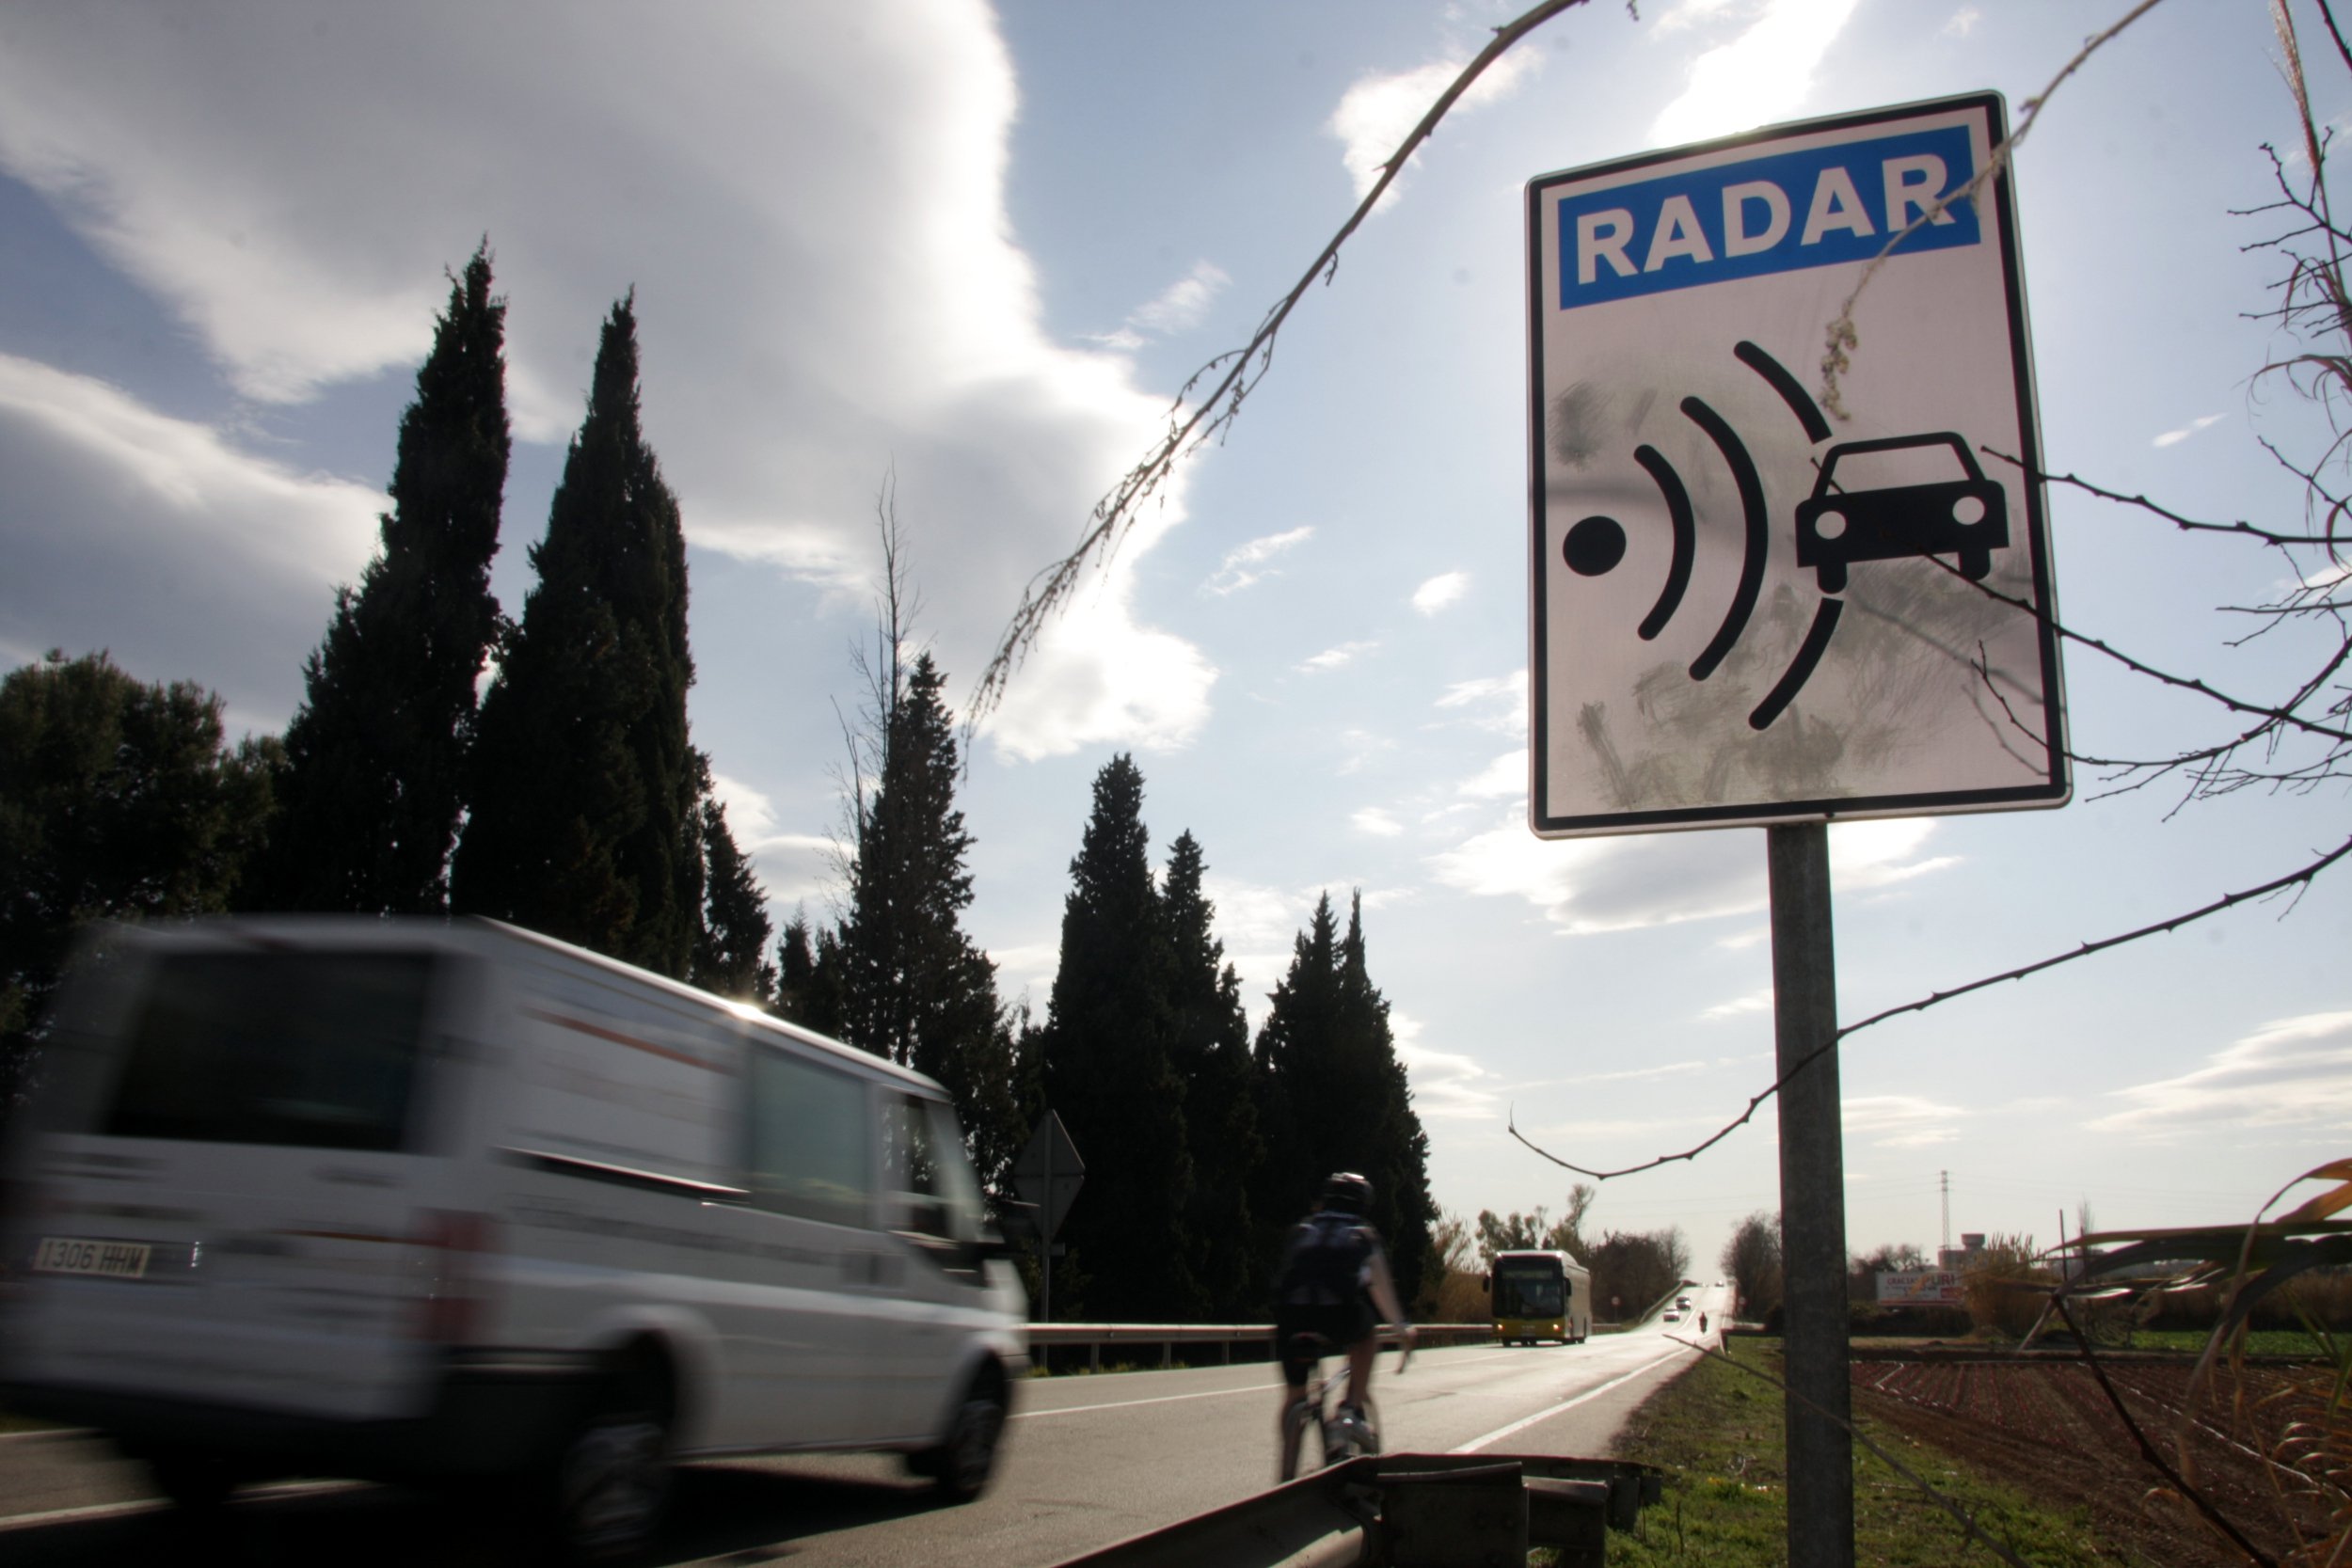 Trànsit instal·larà un radar de tram a la C-31 a Badalona